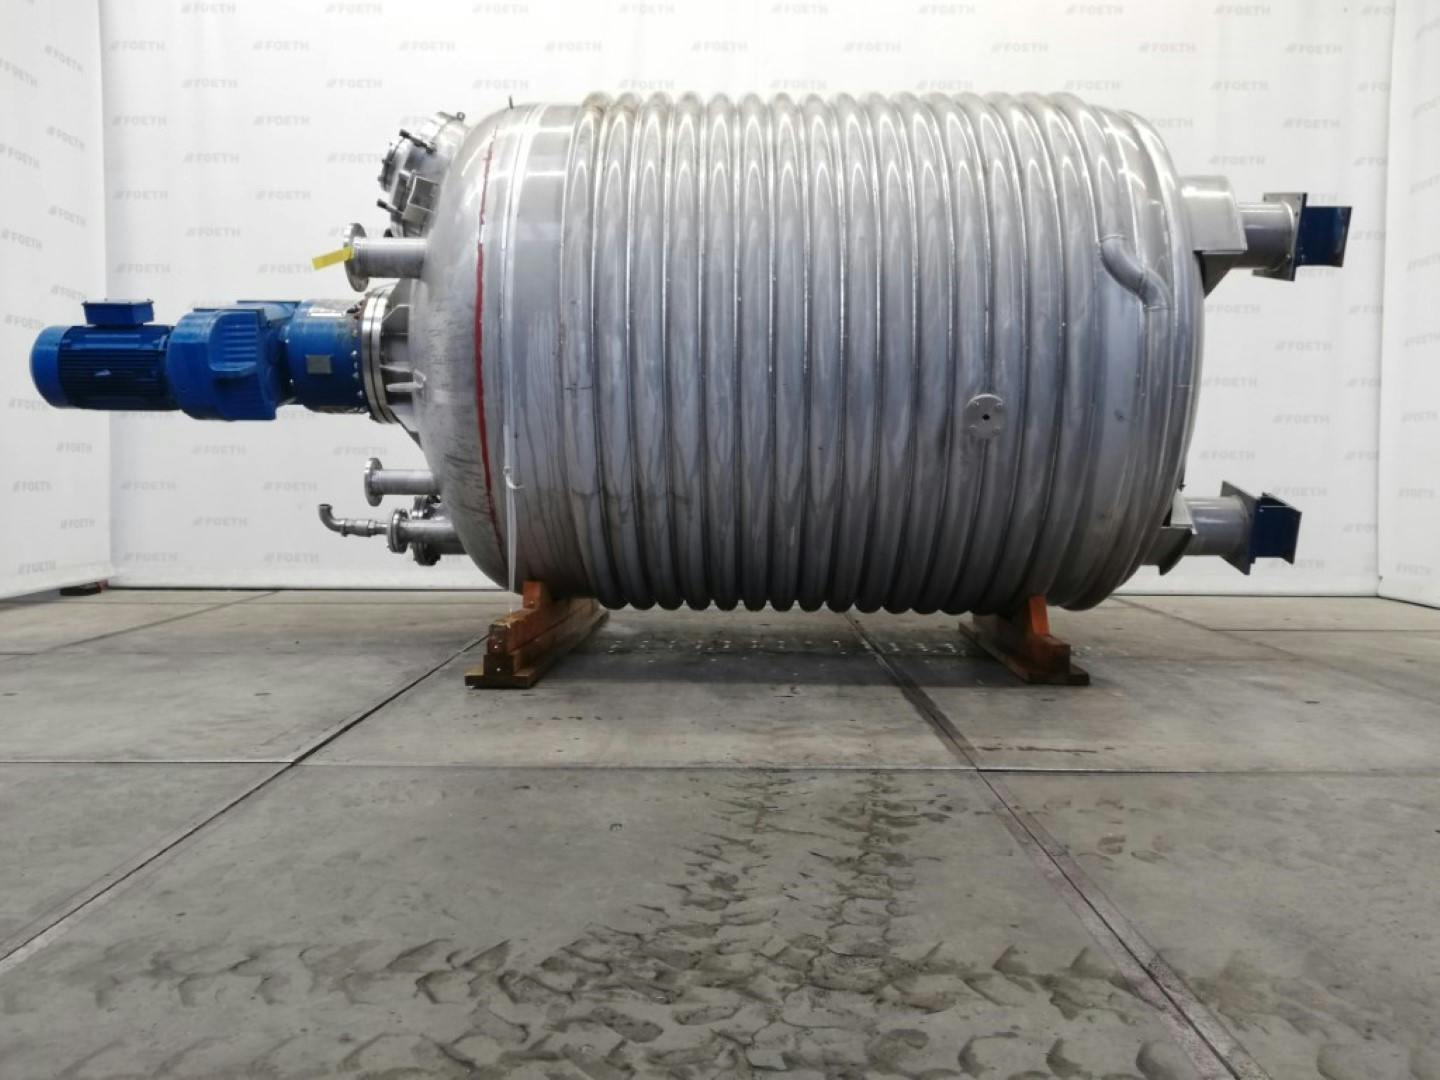 Rudert Edelstahl-Technik Reaktor 10m3 - Stainless Steel Reactor - image 1